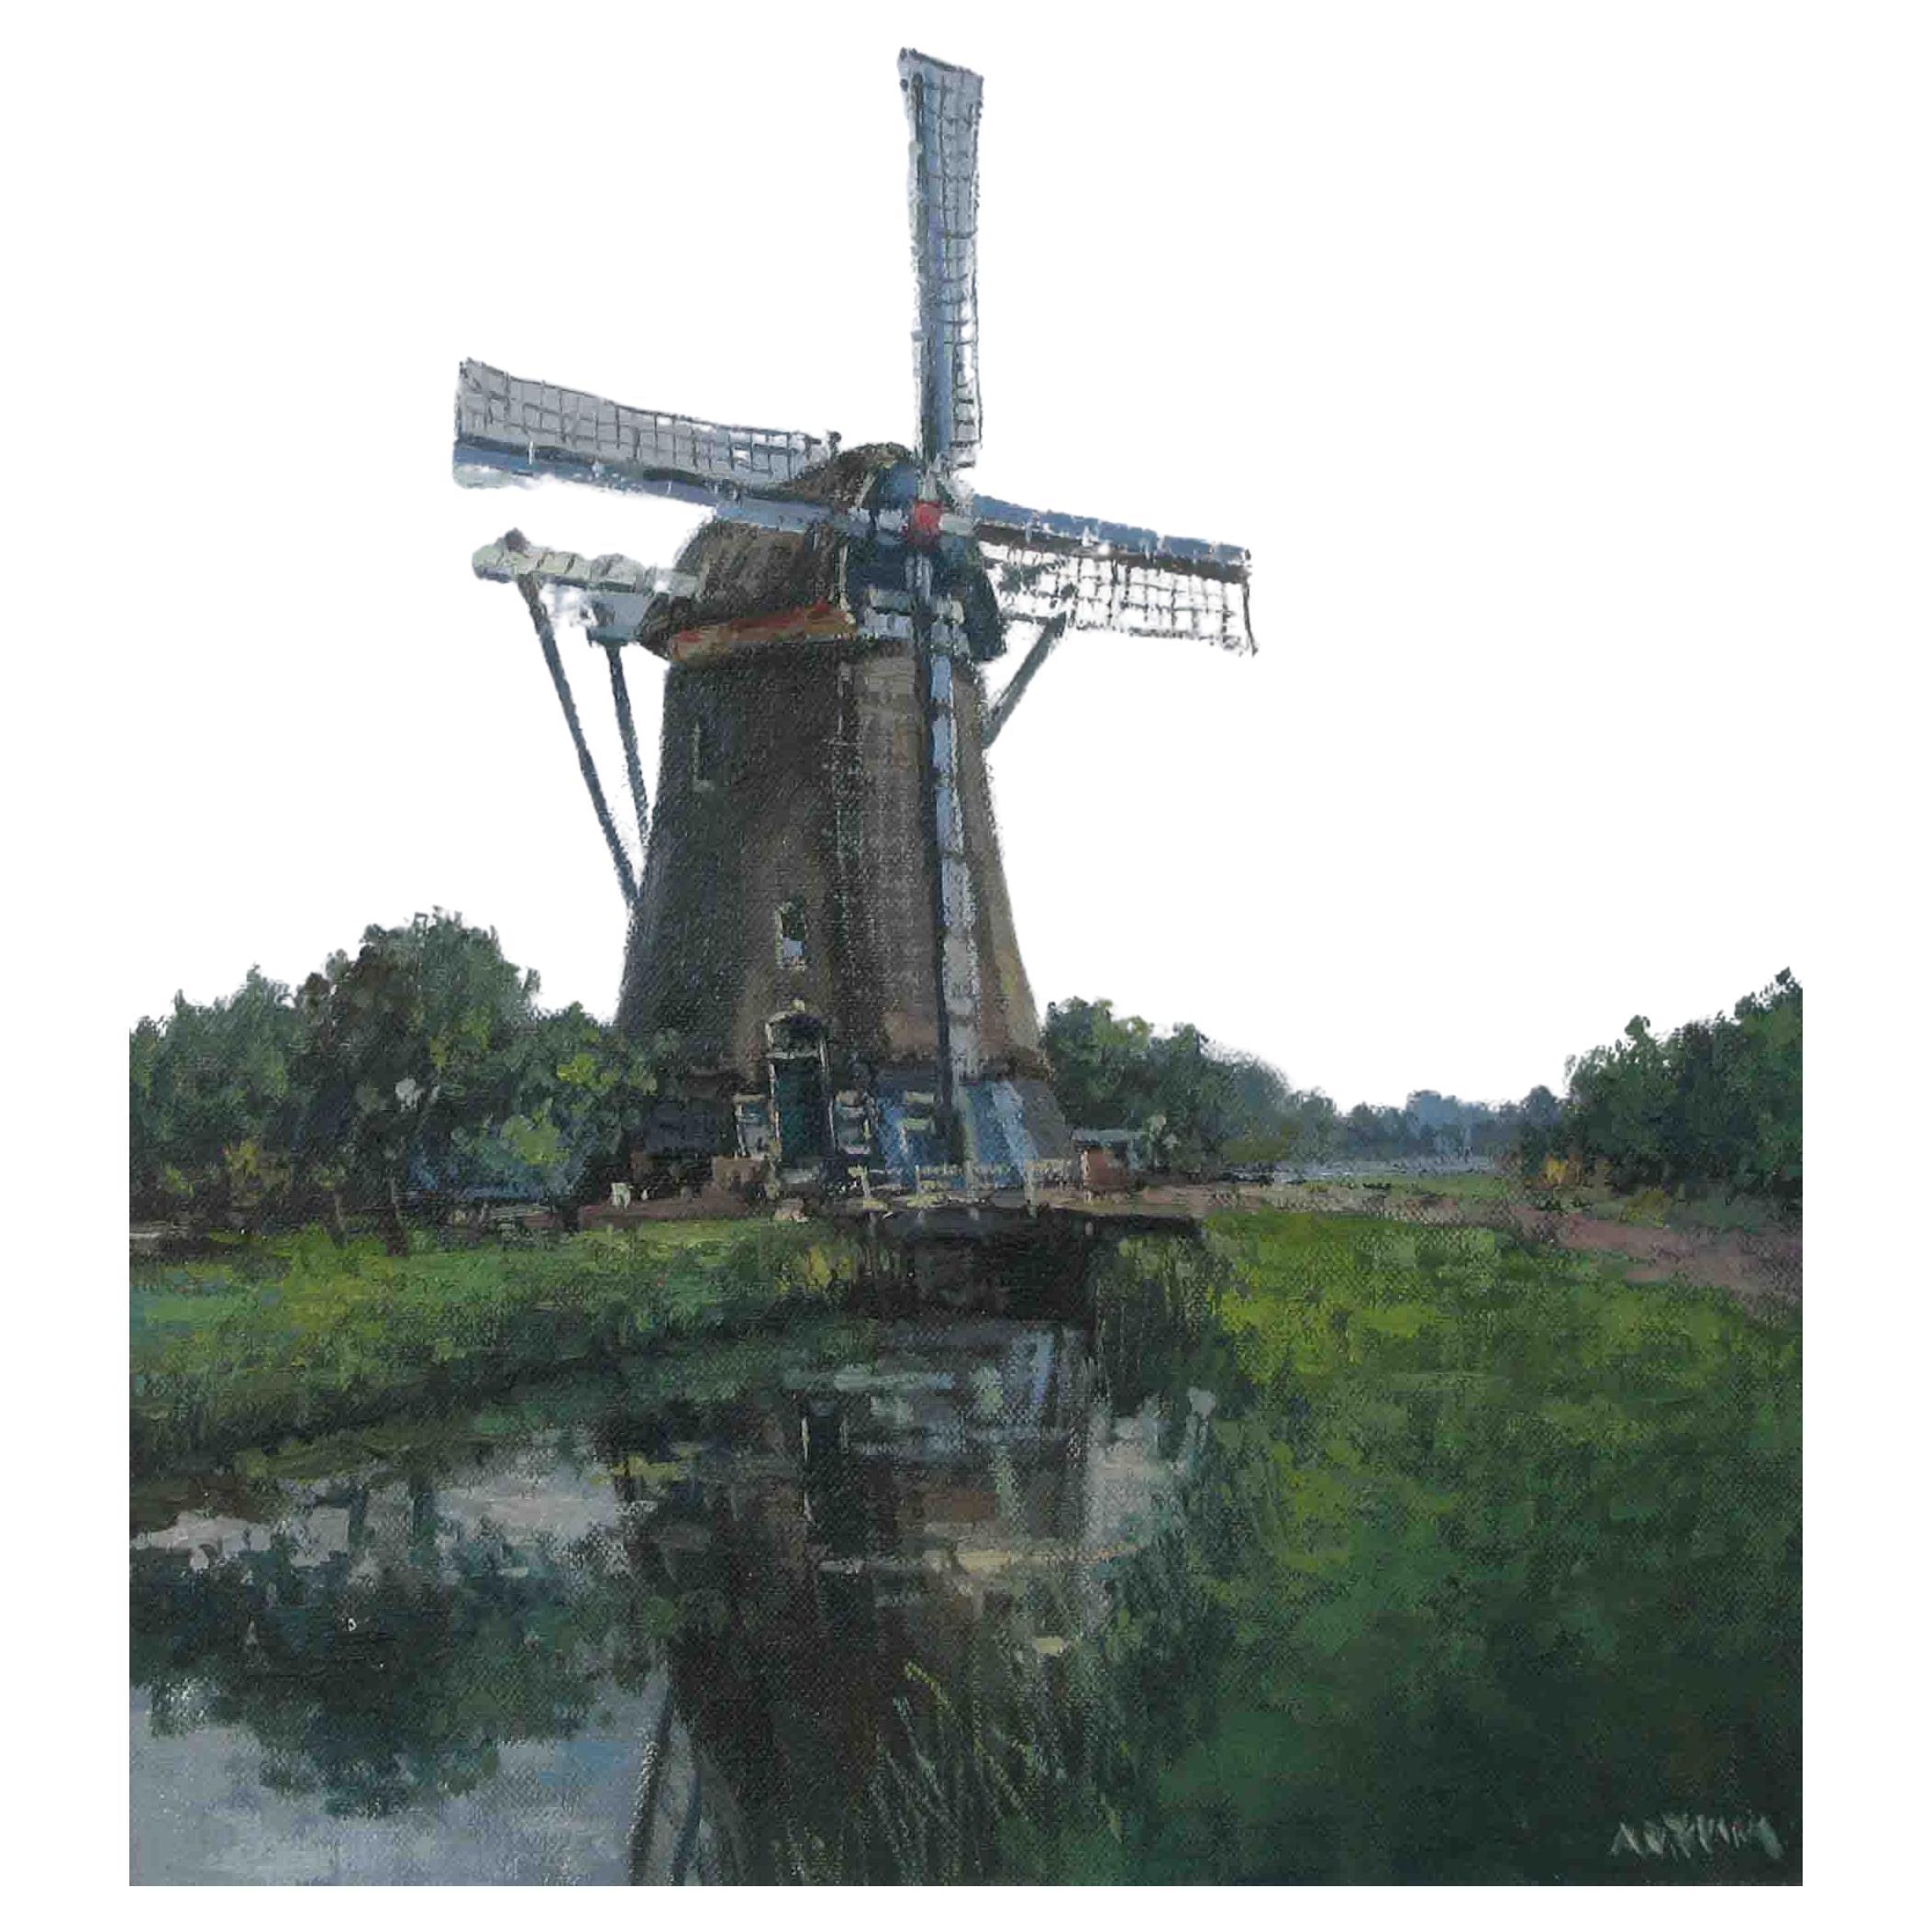 ANTON VAN UNEN MALEREI (NIEDERLÄNDISCH 1918-2010)

Windmühle in einem Schilfgebiet.

Signiert unten rechts.

Öl auf Leinwand.

15 3/4